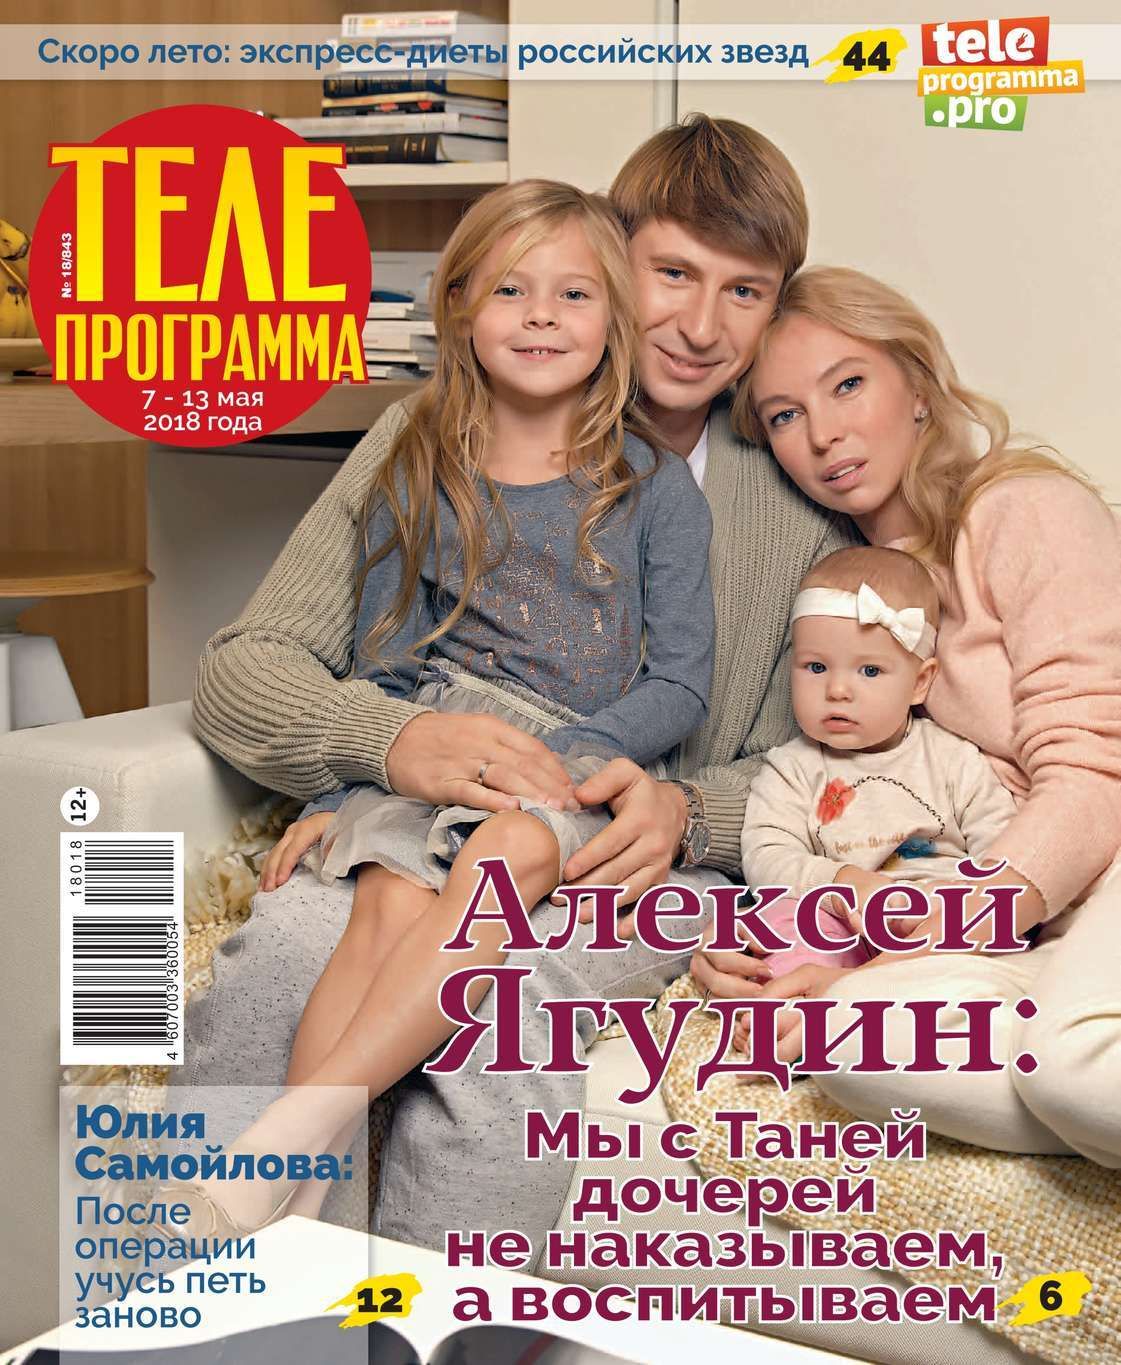 Произведения 2018 года. Ягудин и Тотьмянина. Журнал Телегид Украина. Телепередачи +18.